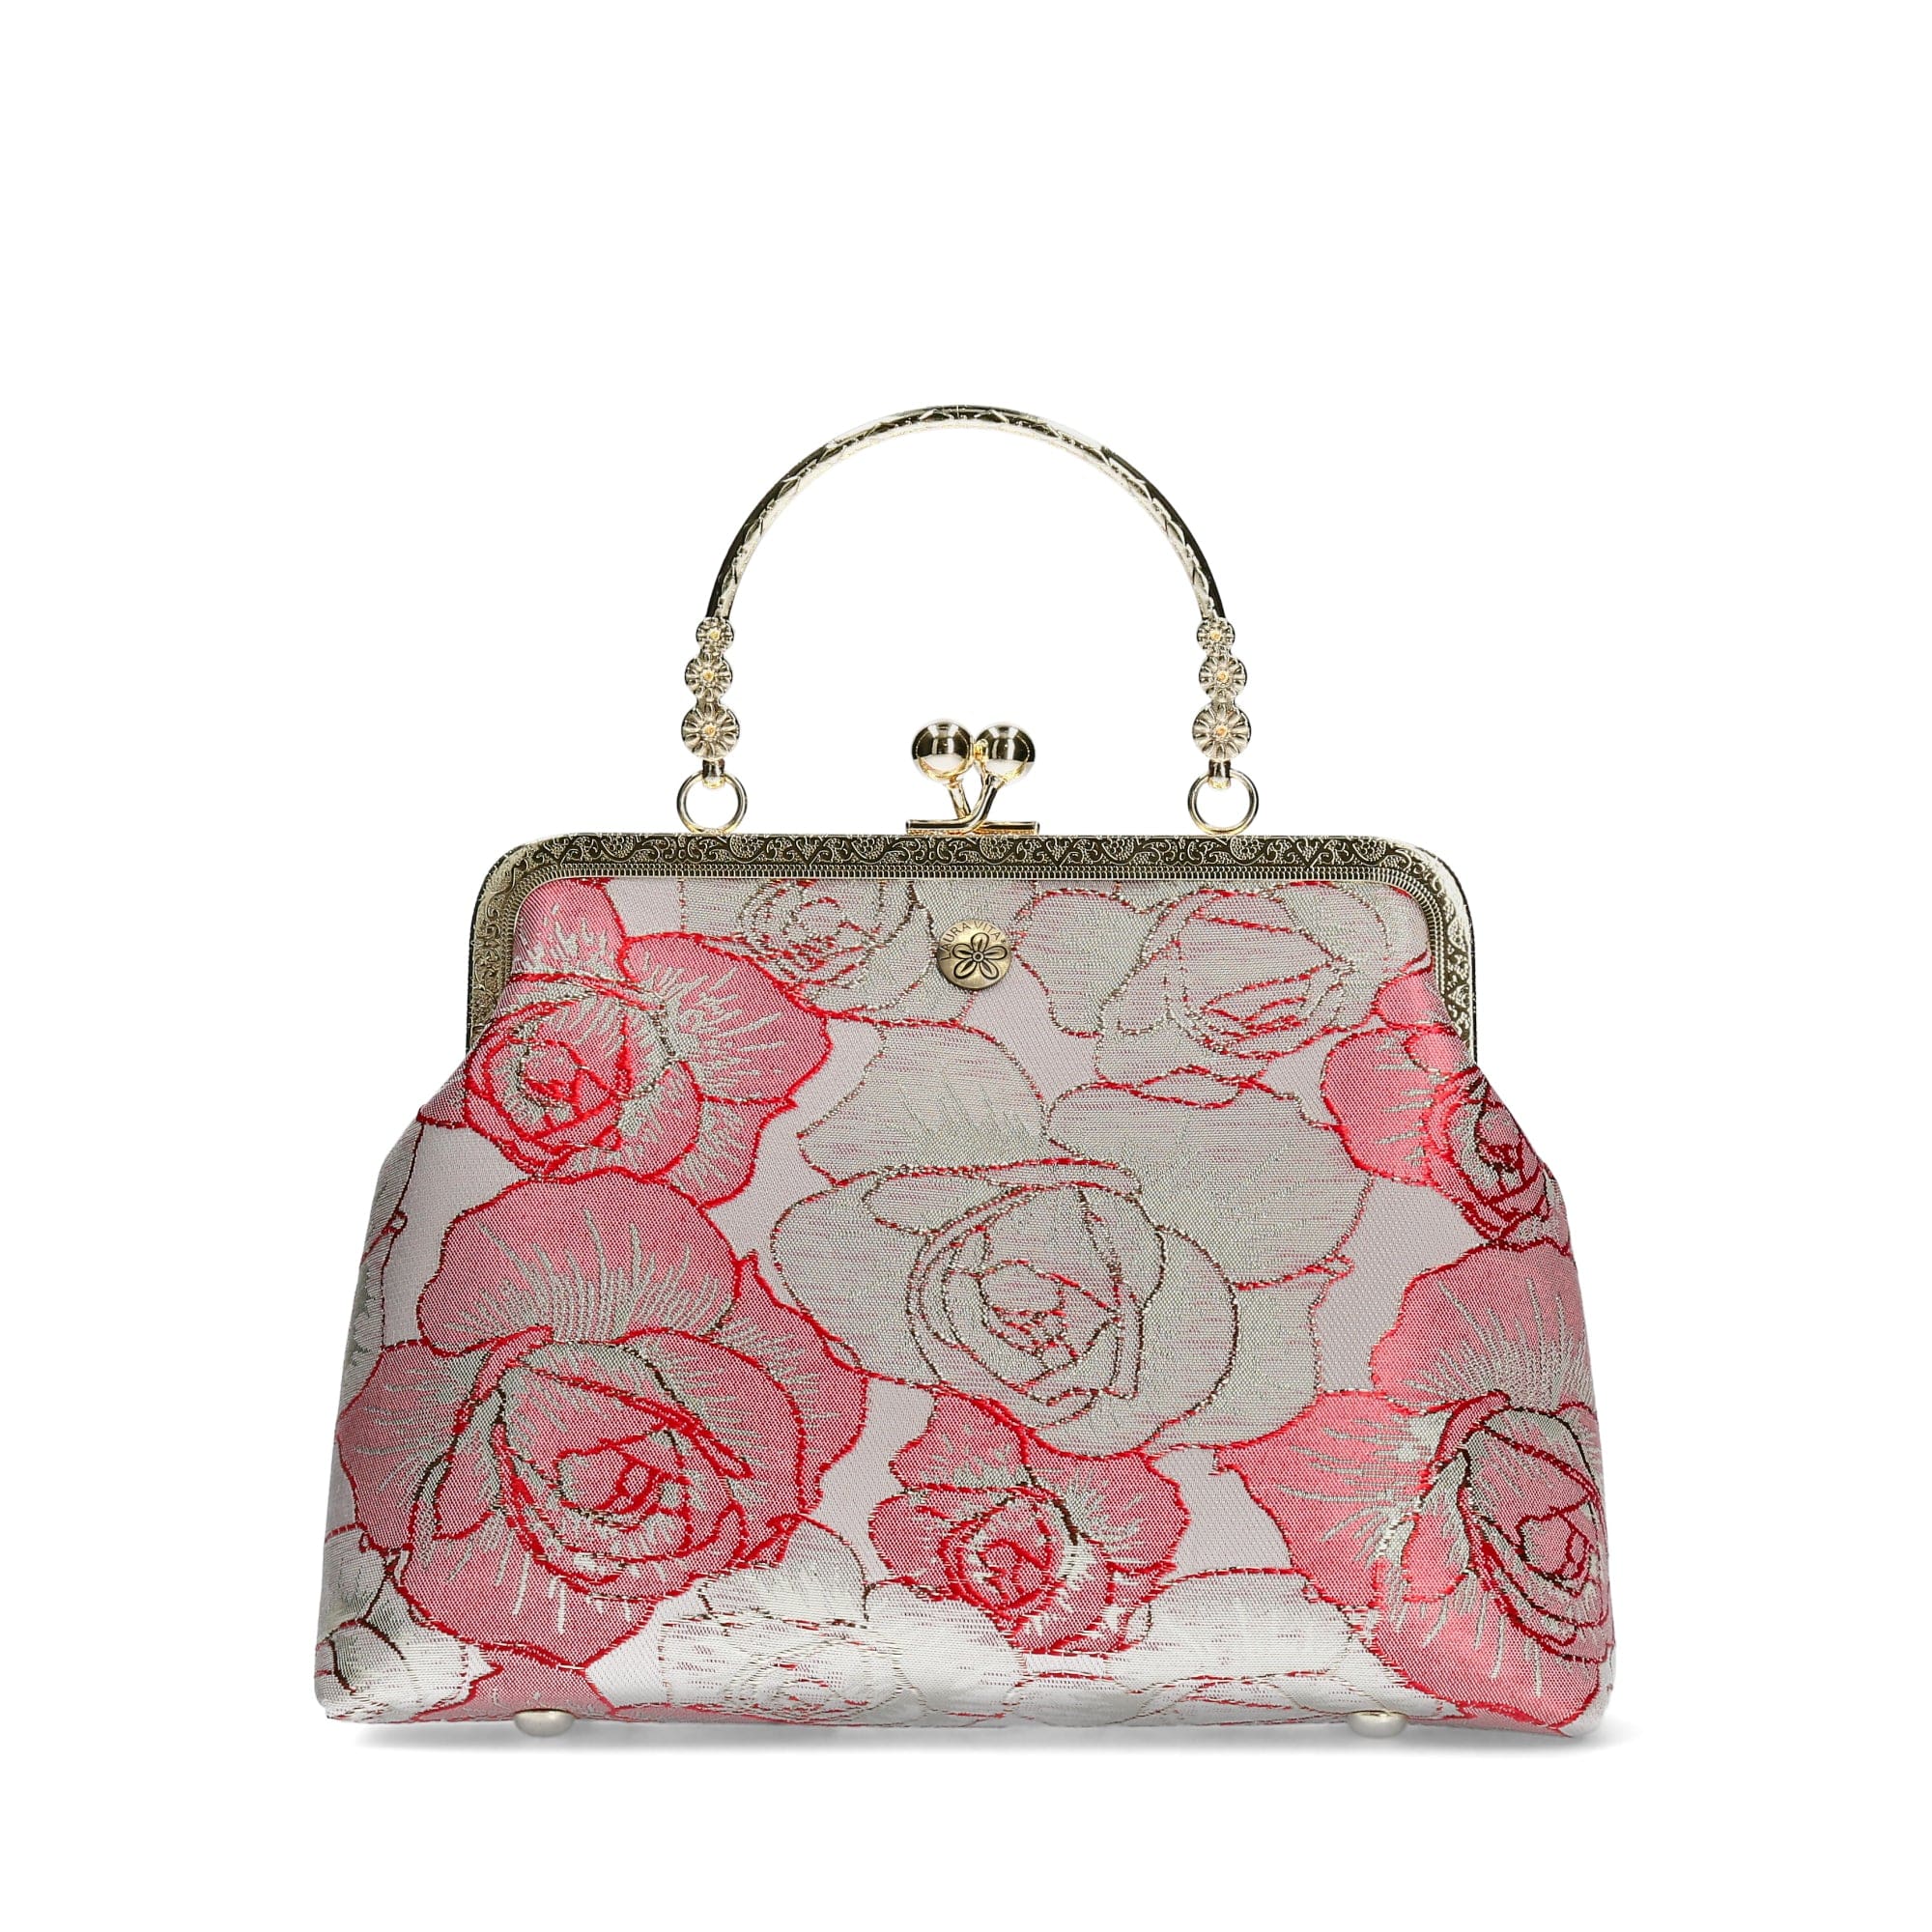 Sac Rosa Exclusivité - Pink - Bag